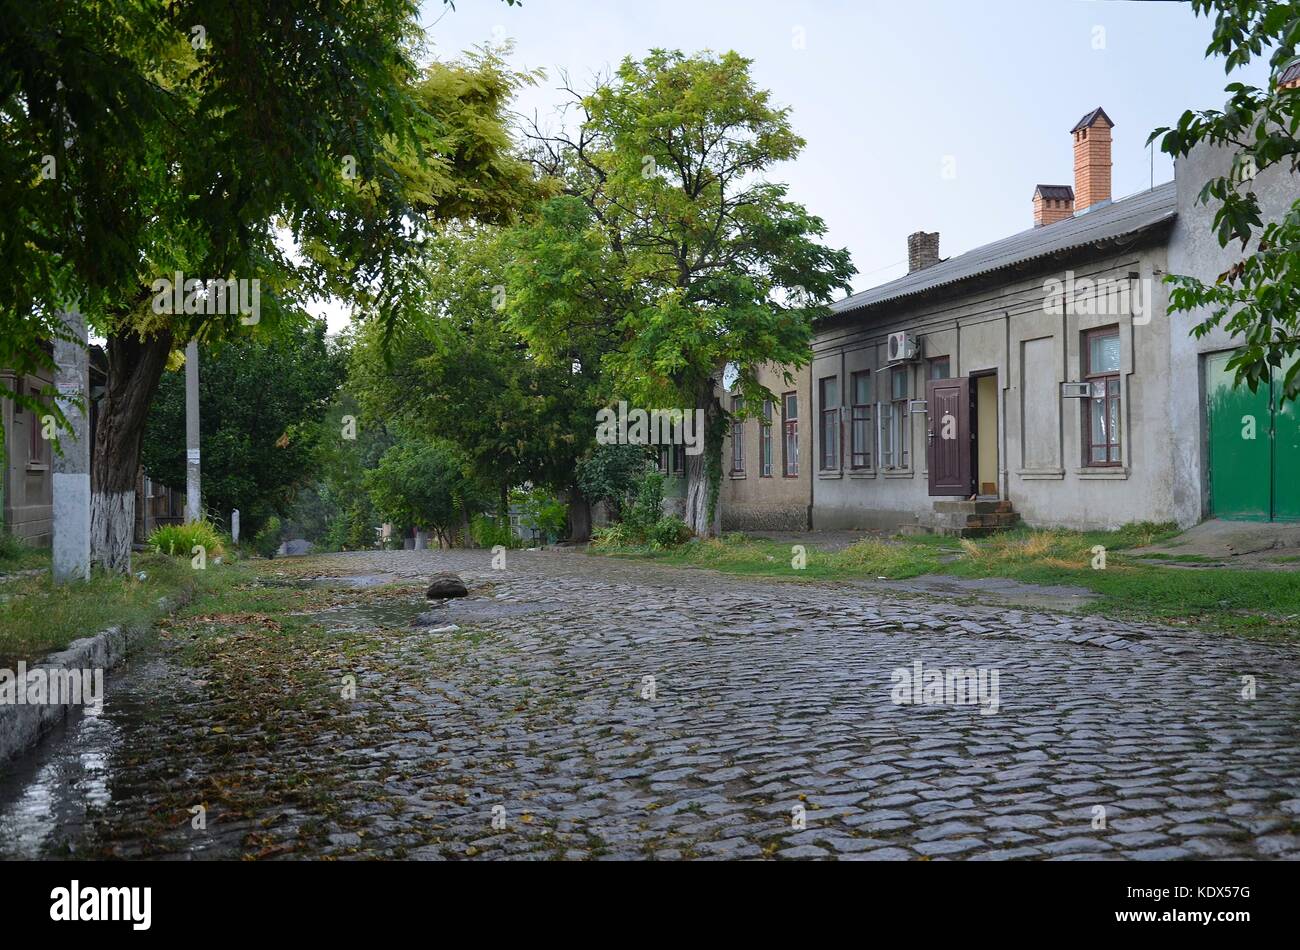 Bilhorod-Dnistrovskyj in der südwestlichen Ukraine: Altstadtgasse Stock Photo